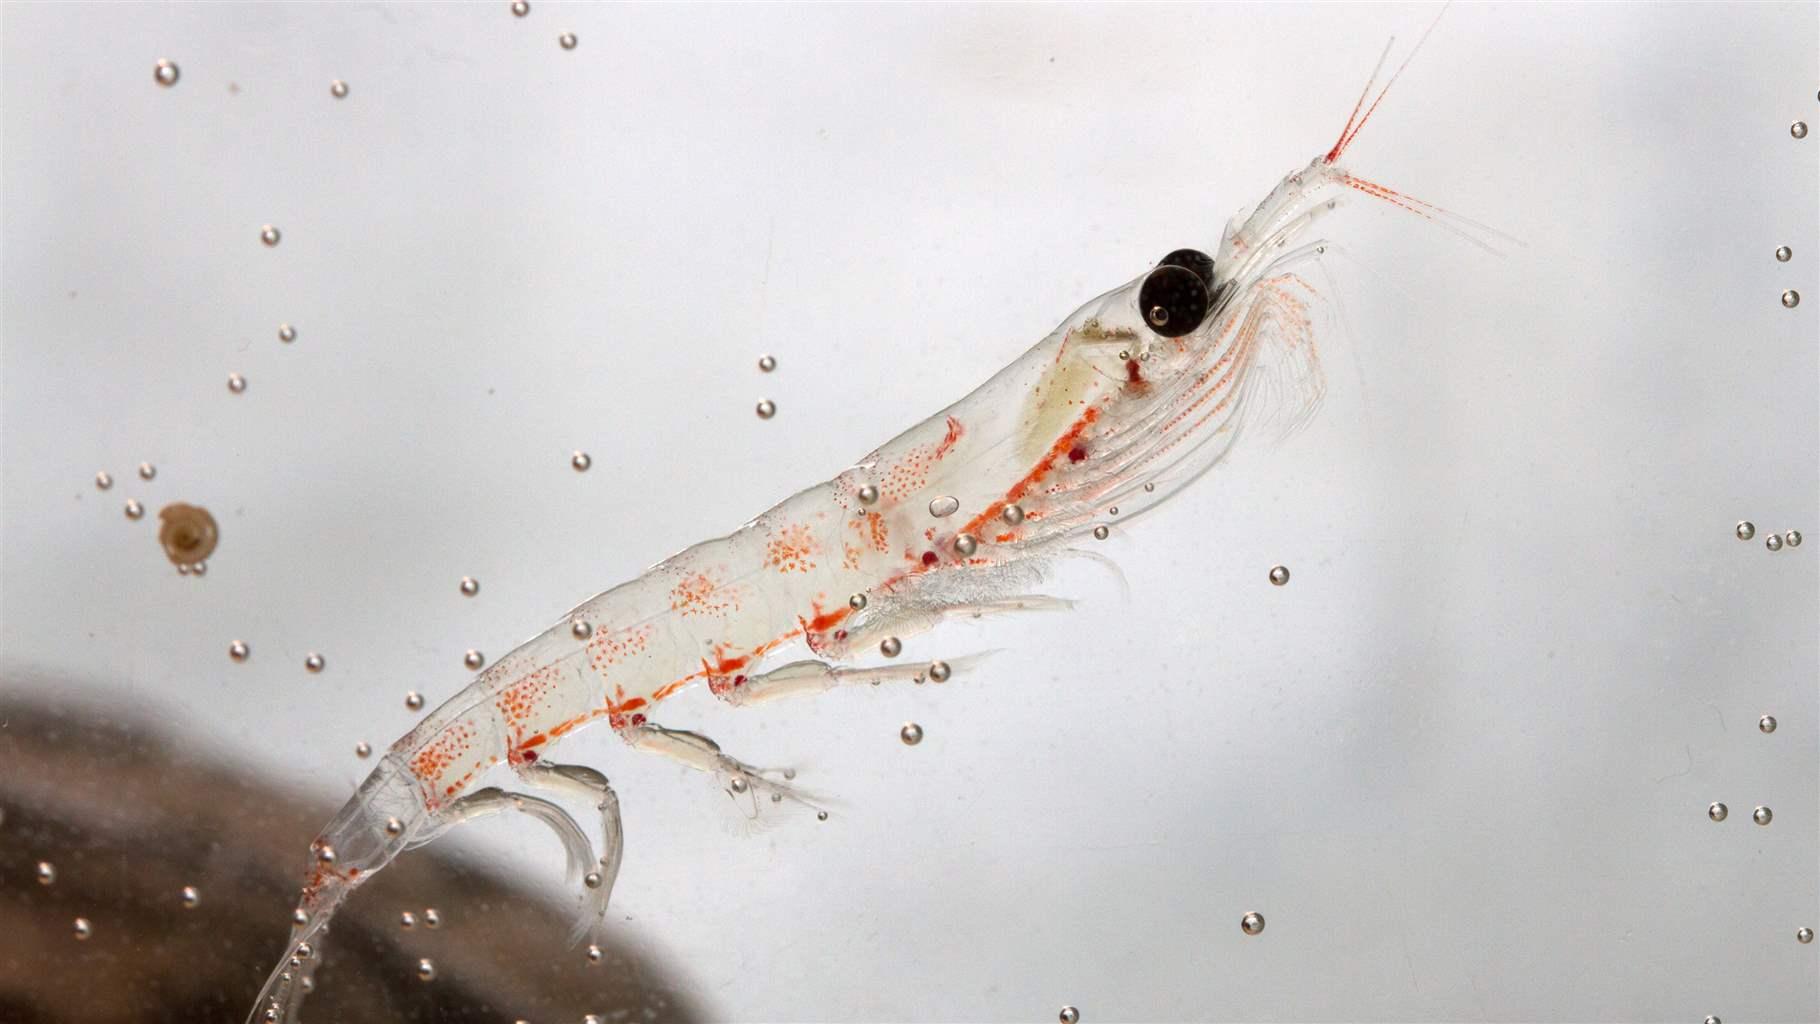 Antartcic Krill in aquarium, closeup